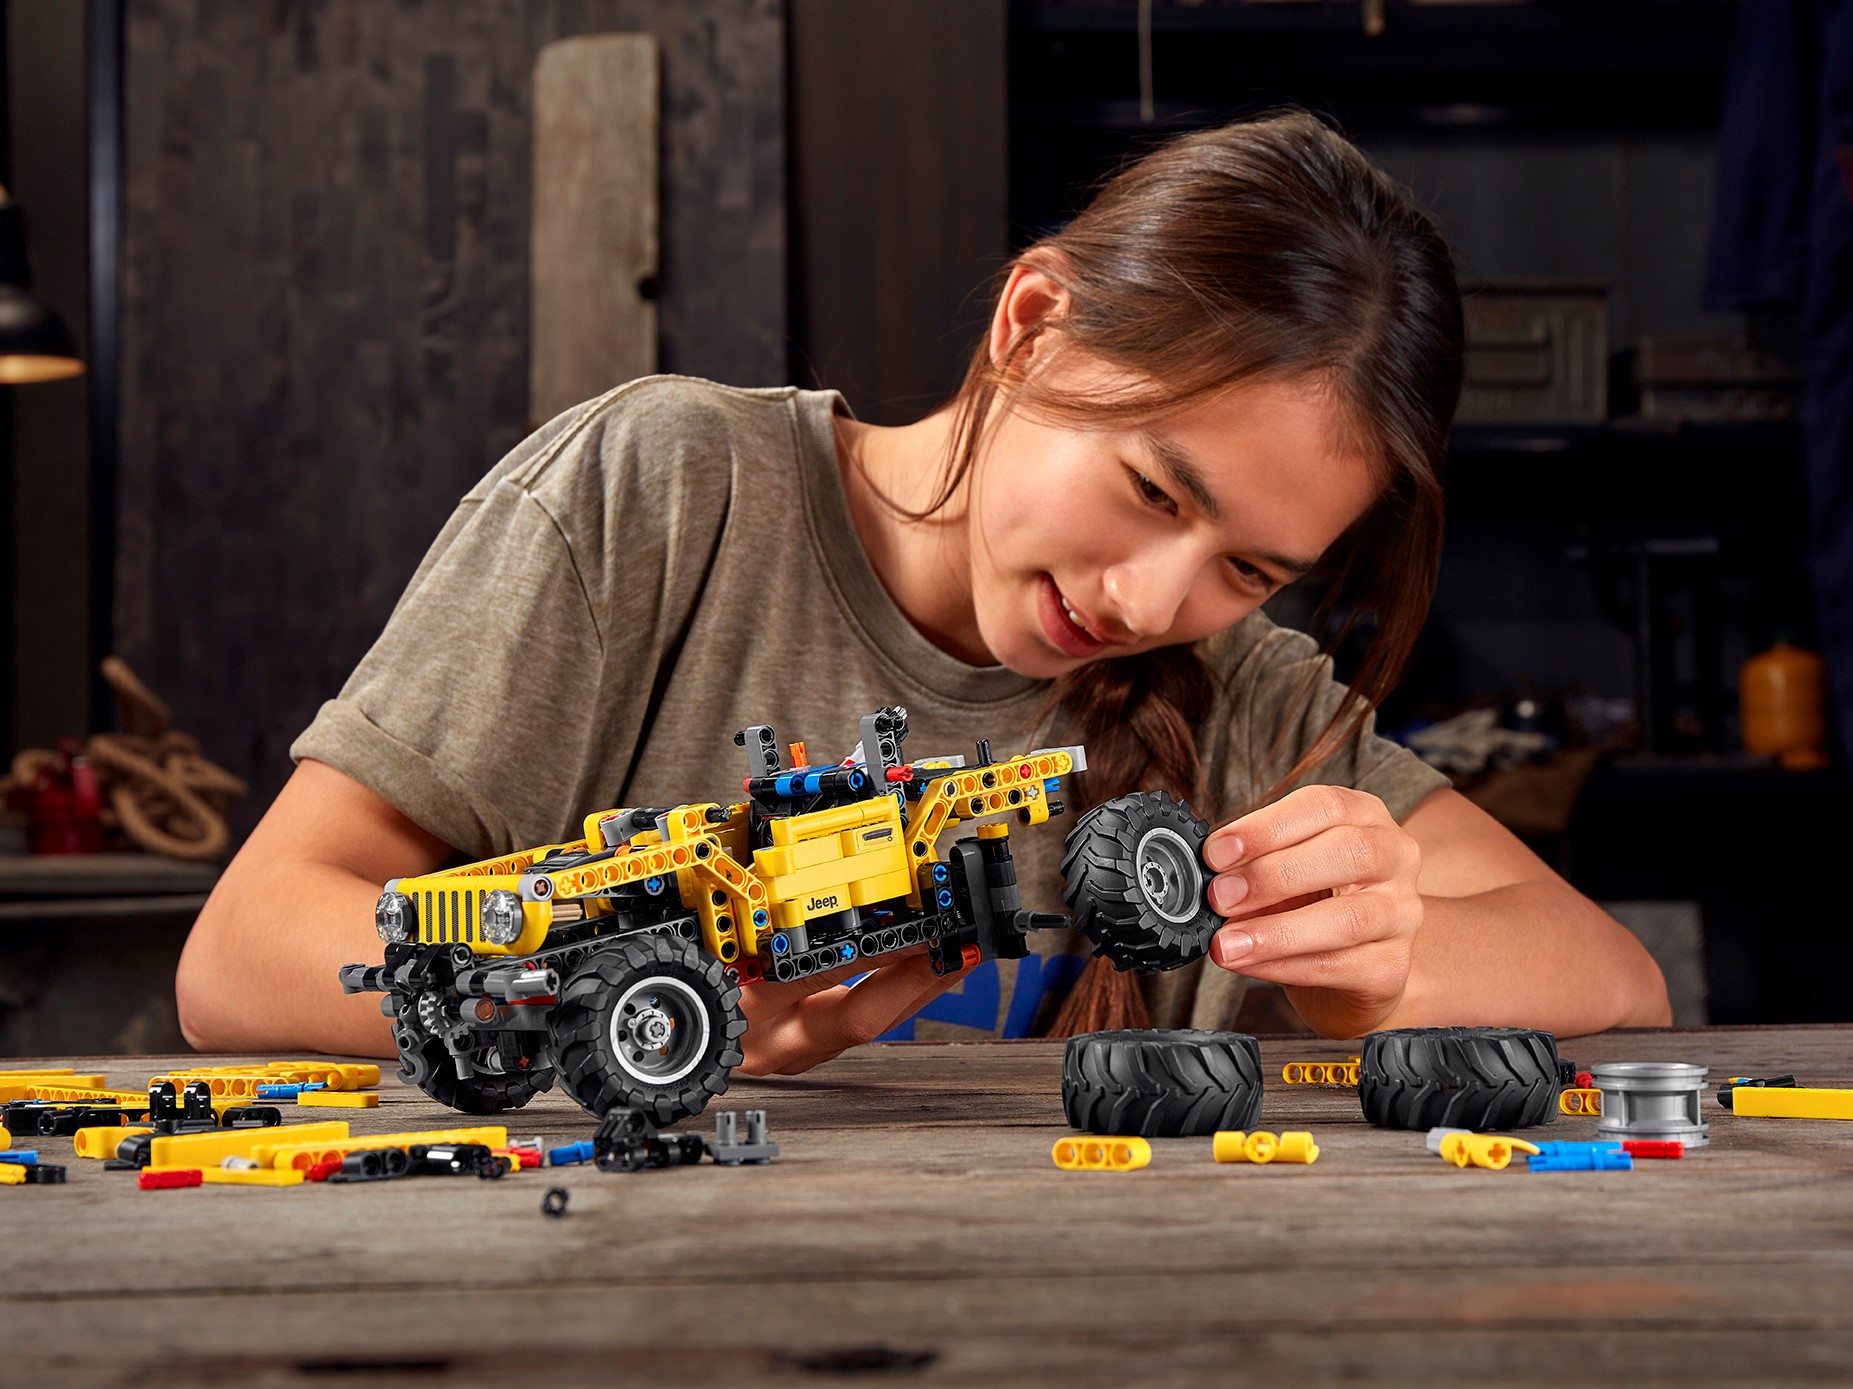 LEGO 42122 Technic Jeep Wrangler, 4x4-Spielzeugauto, Offroad-Geländewagen